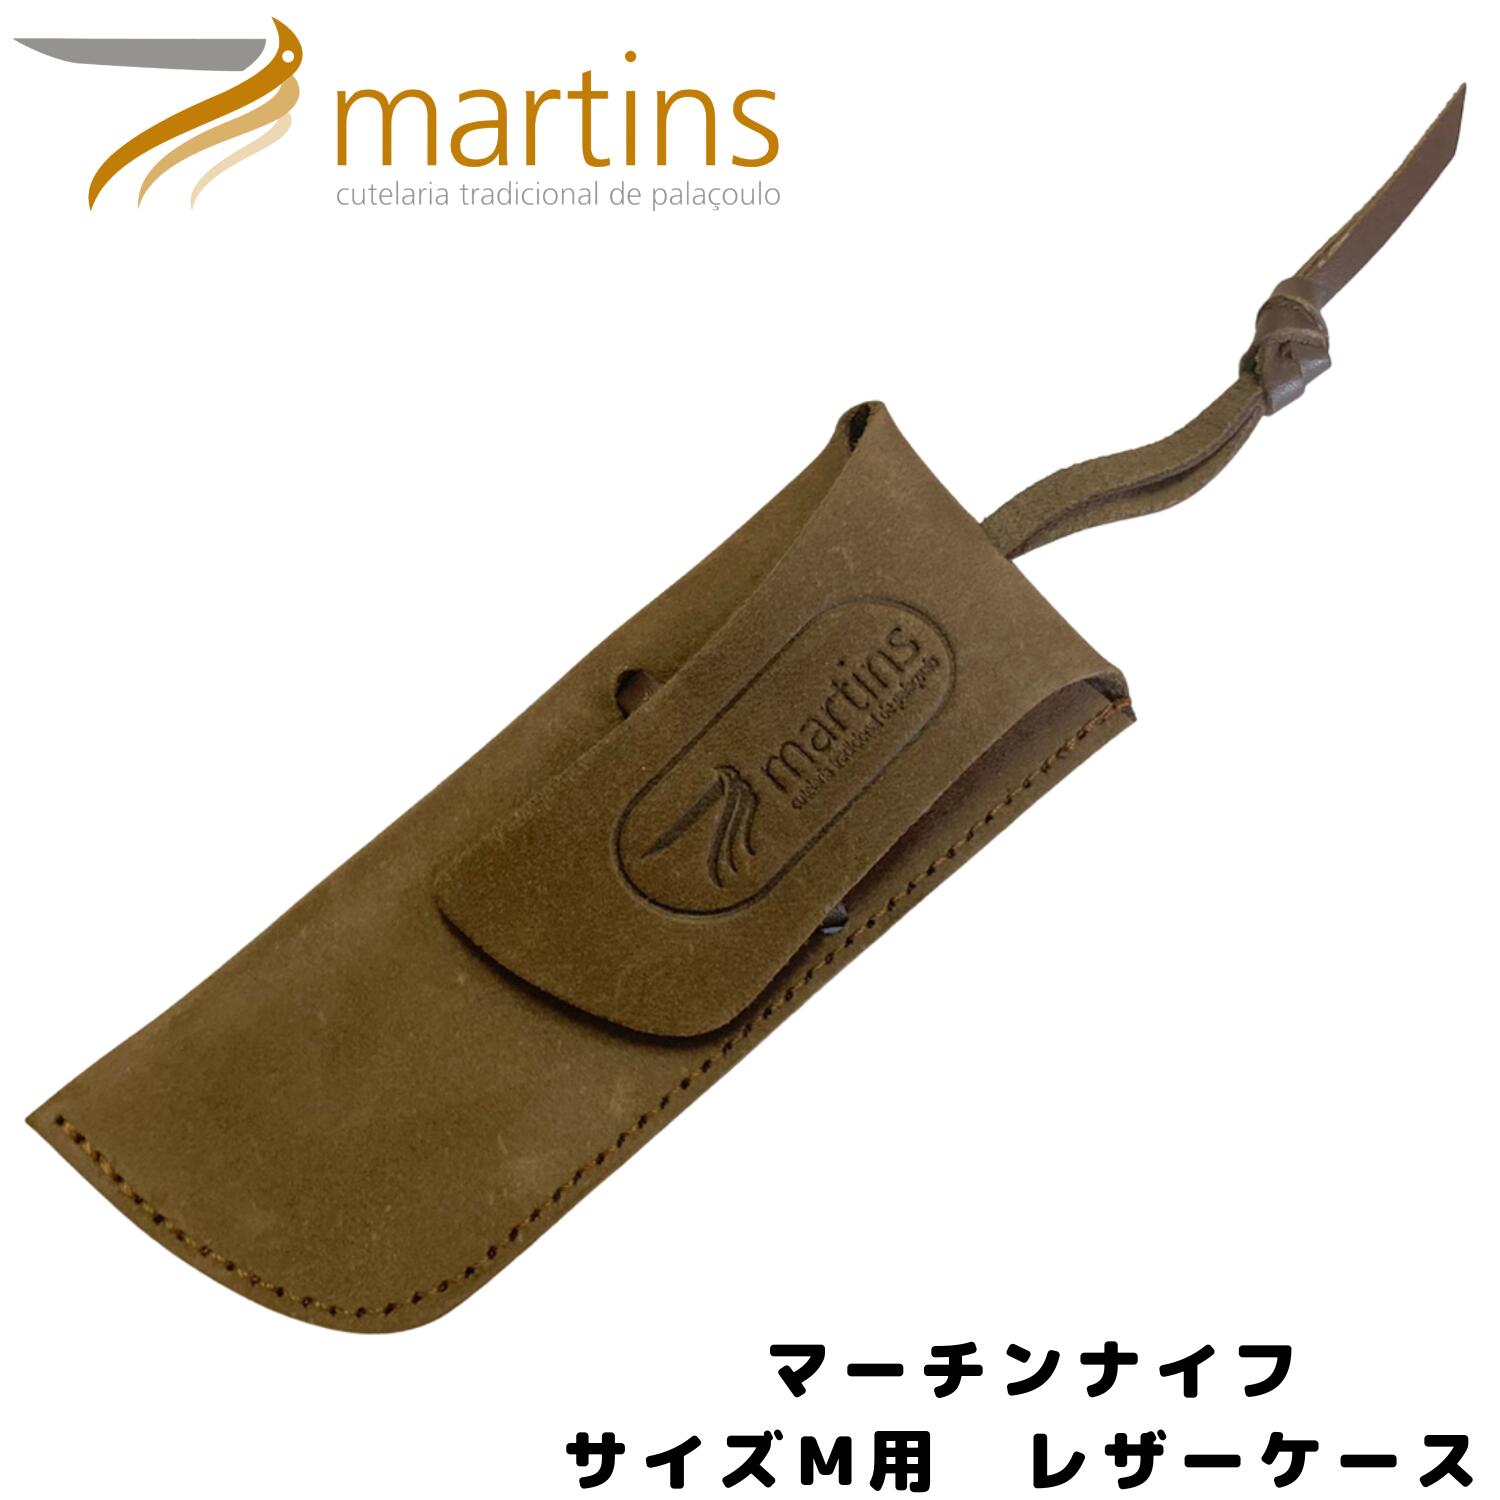 Martins knife(マーチンズ ナイフ) Leather Bag ブラウン レザー ナイフ Mサイズ用 専用カバー アウトドア ナイフ 調理 折り畳みナイフ 新生活